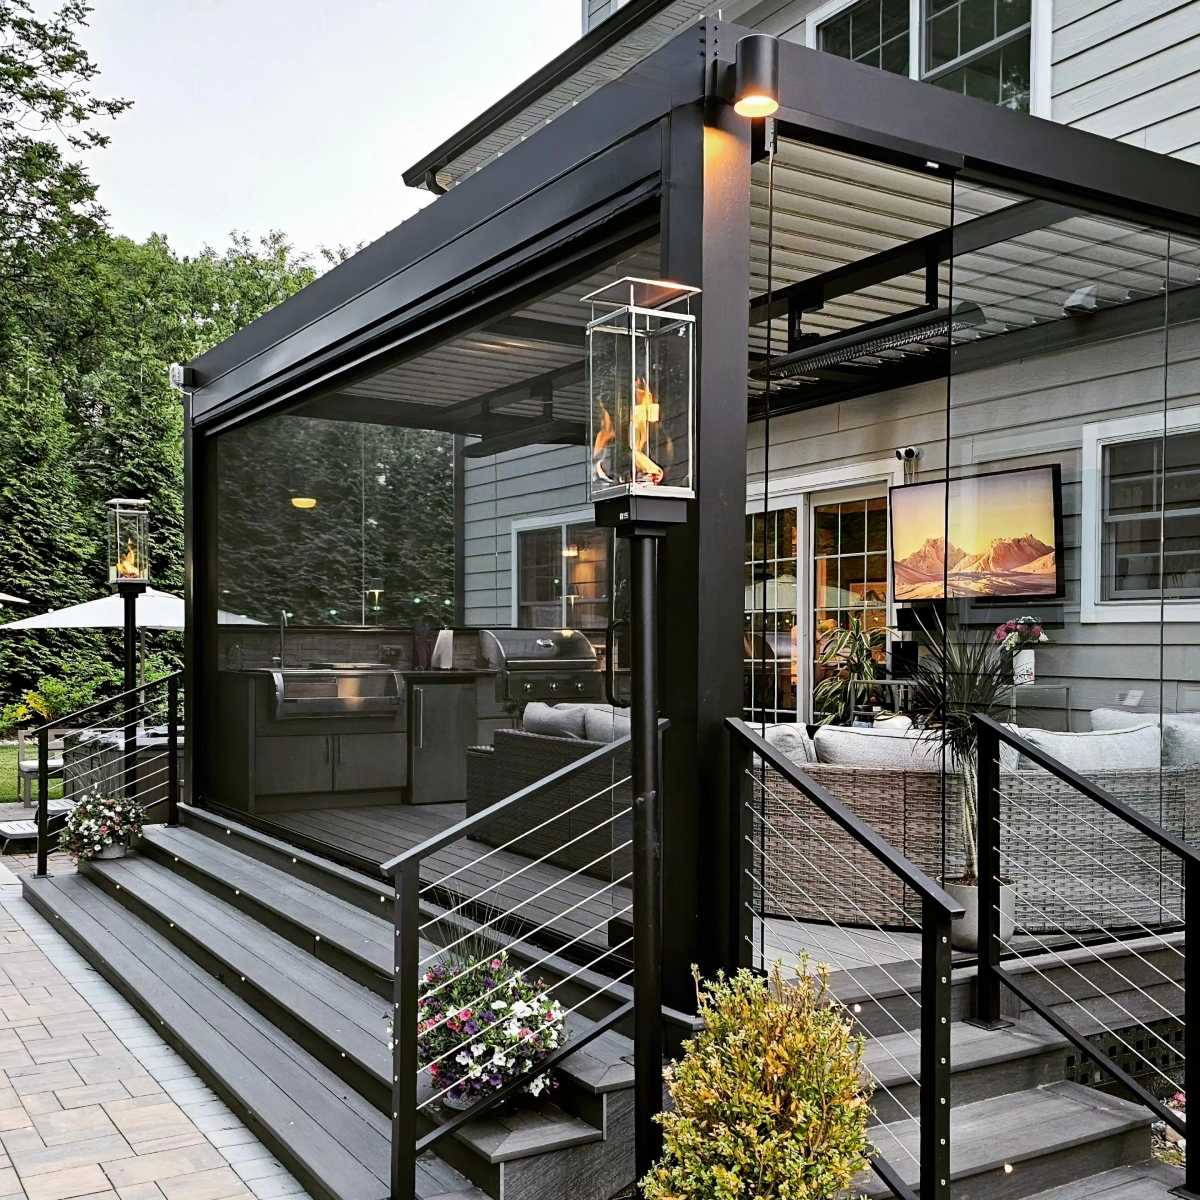 terrasse couverte maison avec cuisine exterieure barbecue meuble